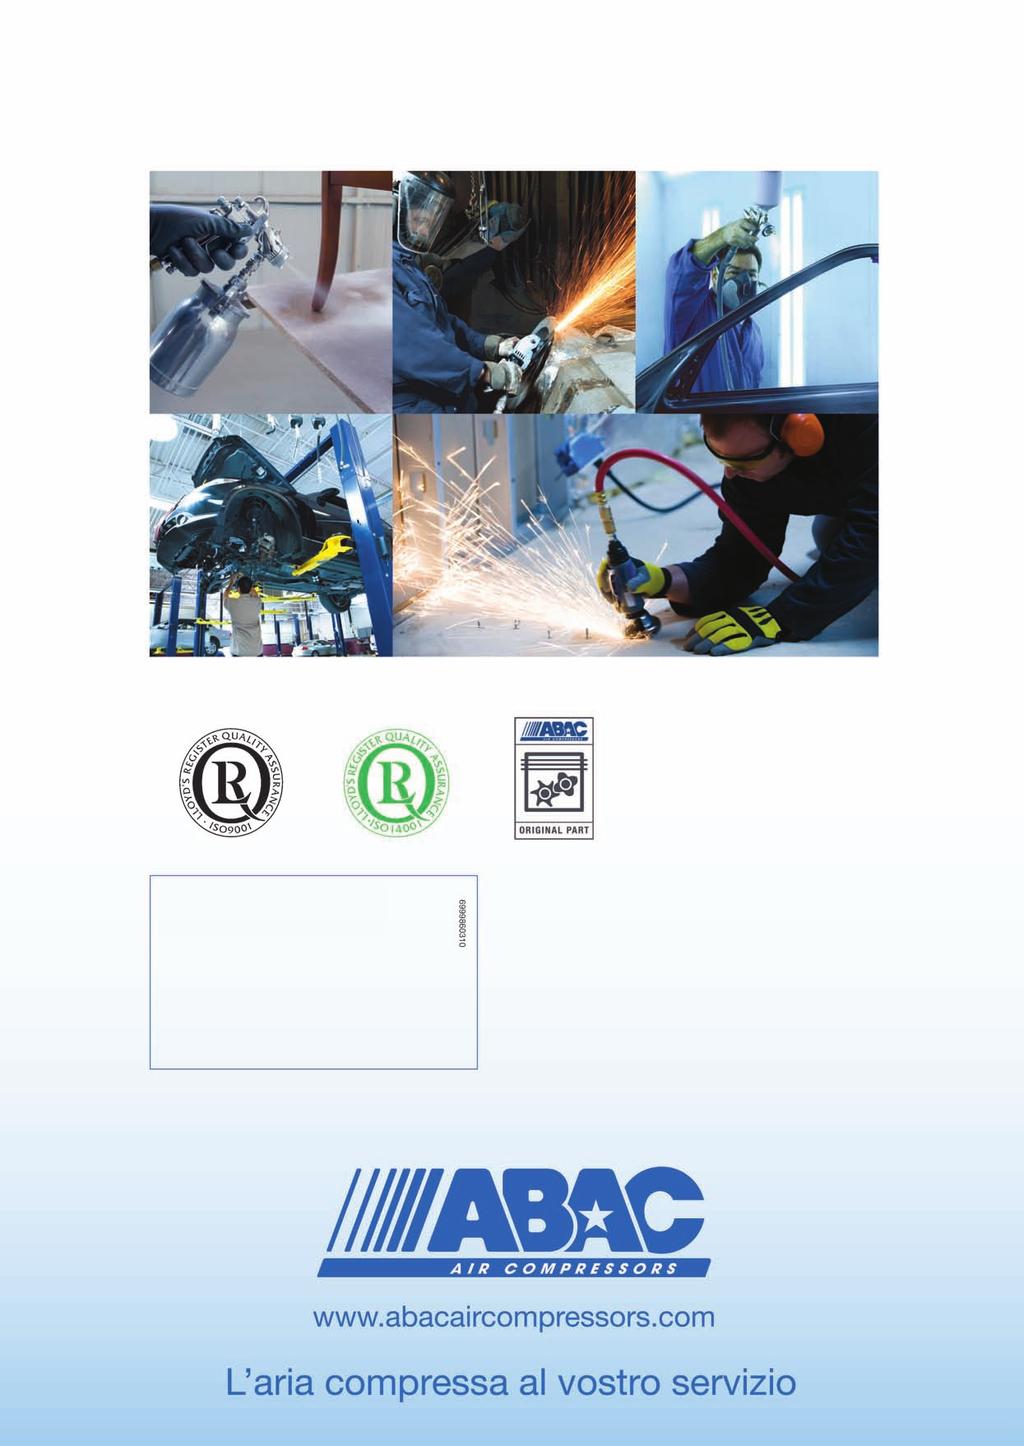 Il mondo di ABAC Distributore autorizzato 6999990148-02/2013 Original part. Garanzia di qualità.